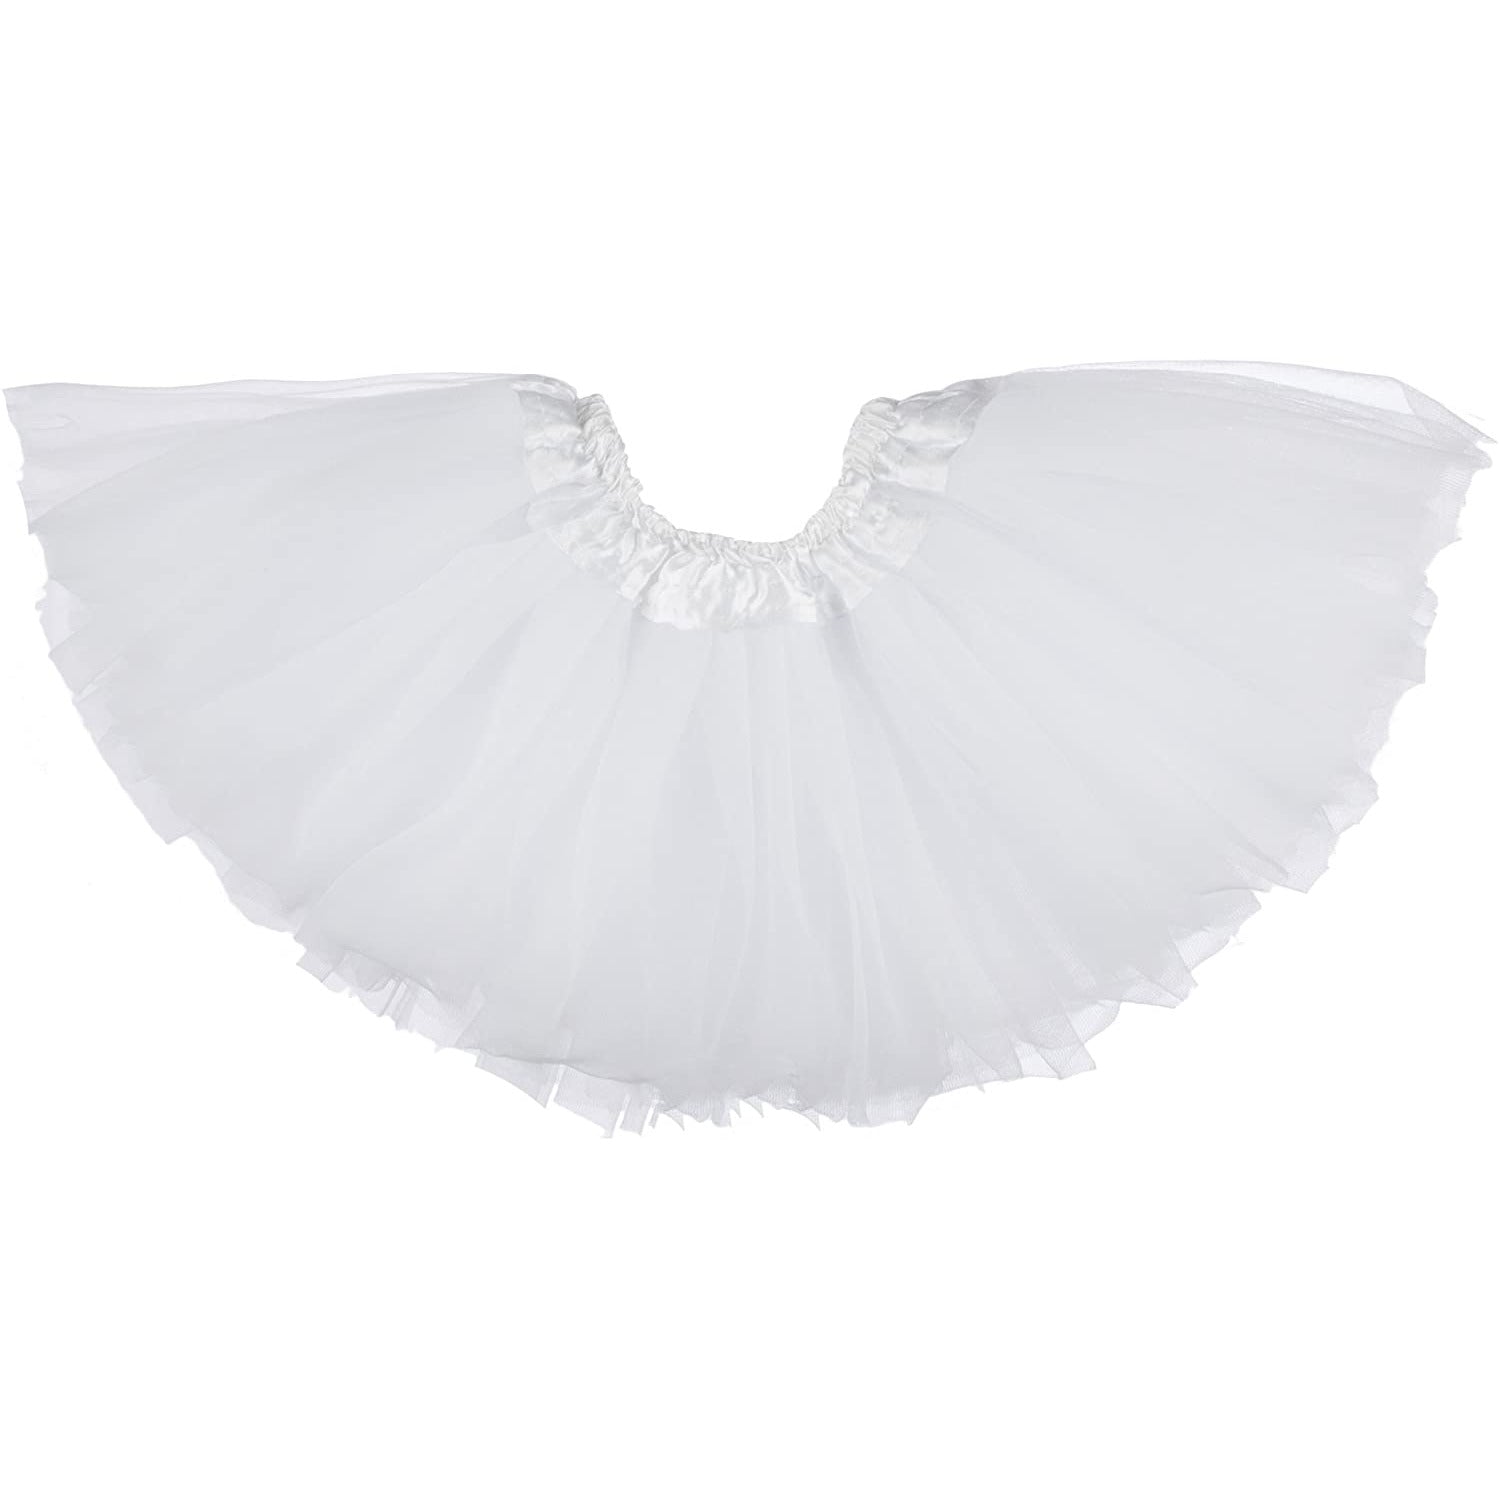 Dancina Tulle Skirt for Girls 2-12 years in White